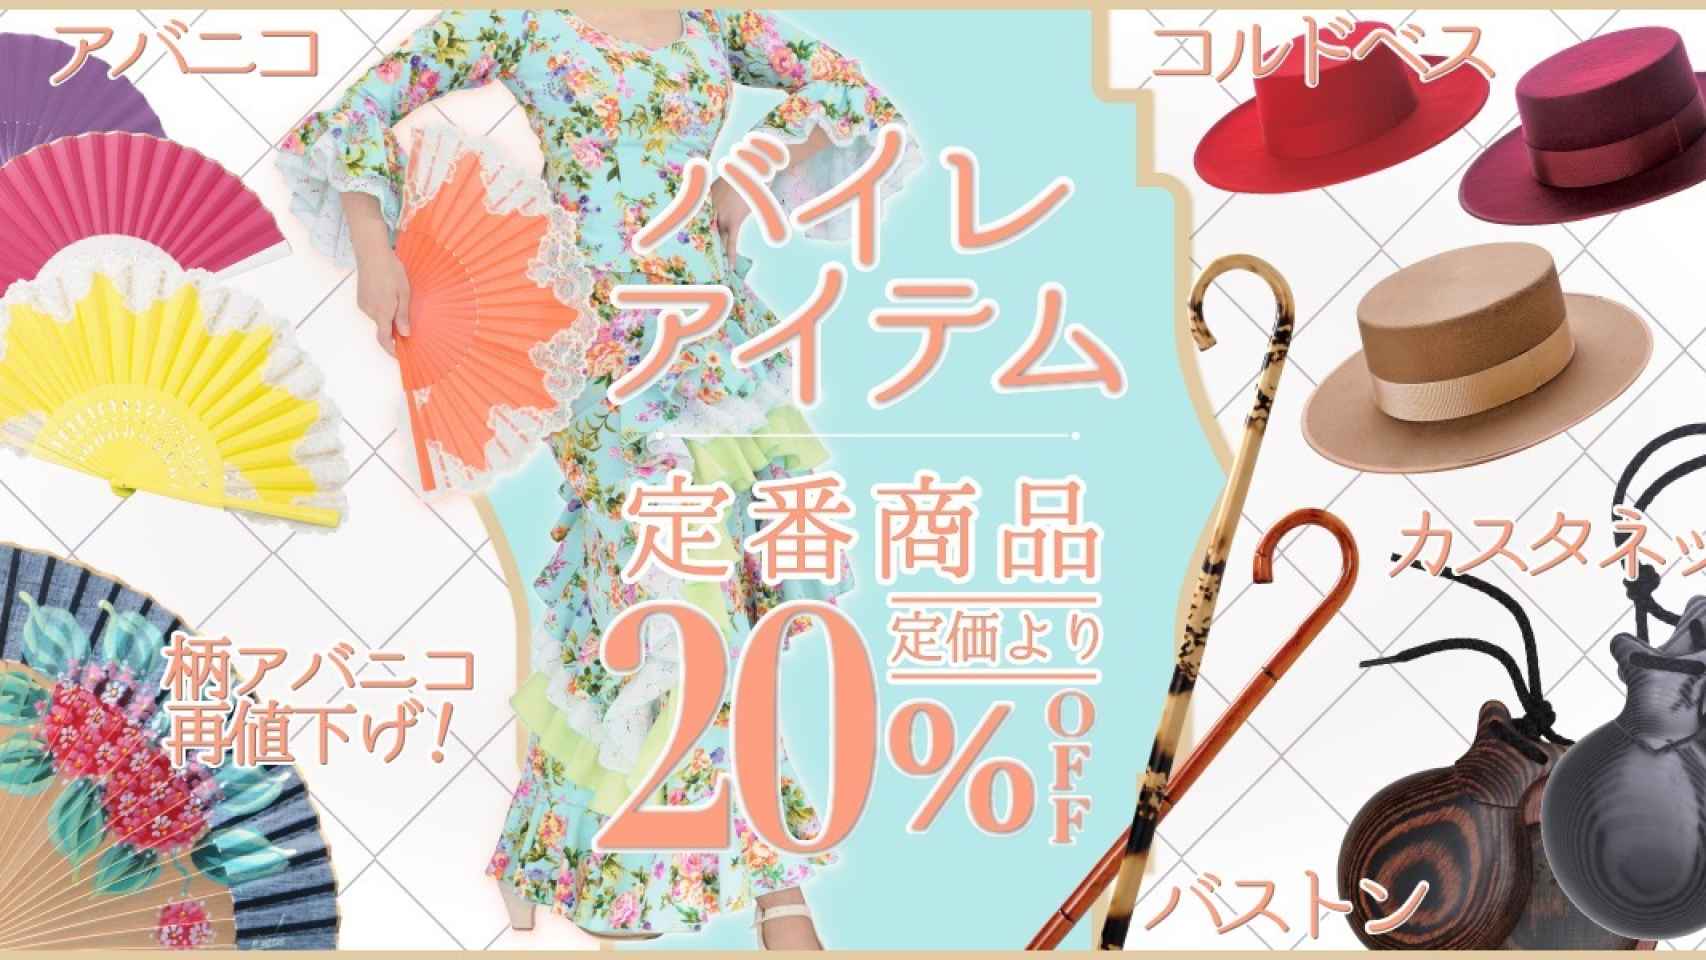 Un anuncio en Japón de las castañuelas y otros productos relacionados con el flamenco.